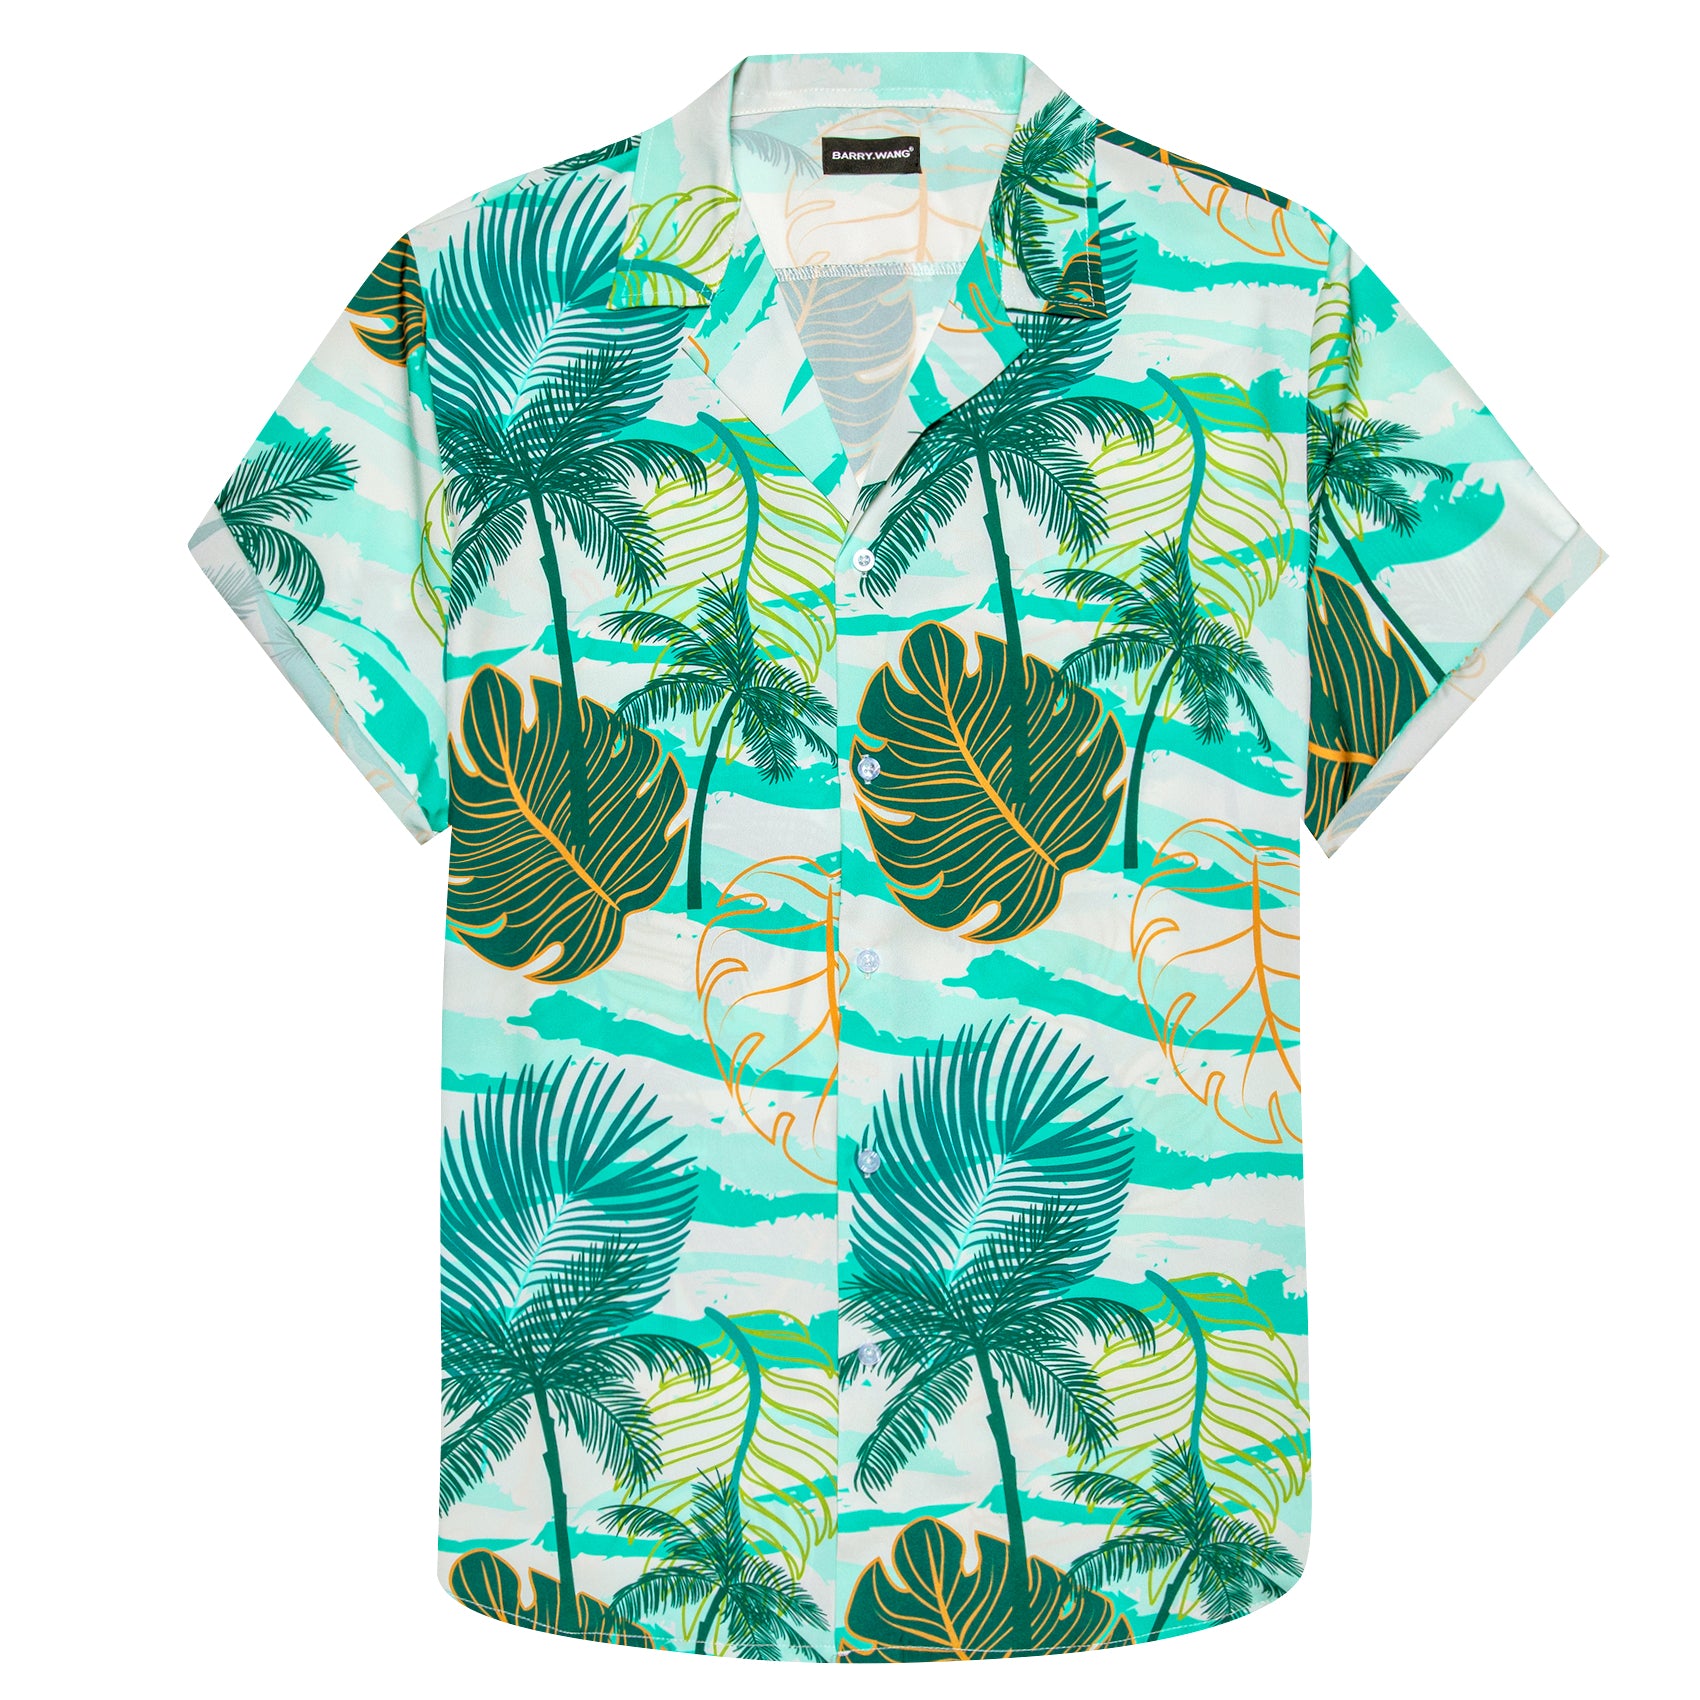 Mens Green Floral Pattern Short Sleeves Summer Hawaii Shirt green floral button down shirt